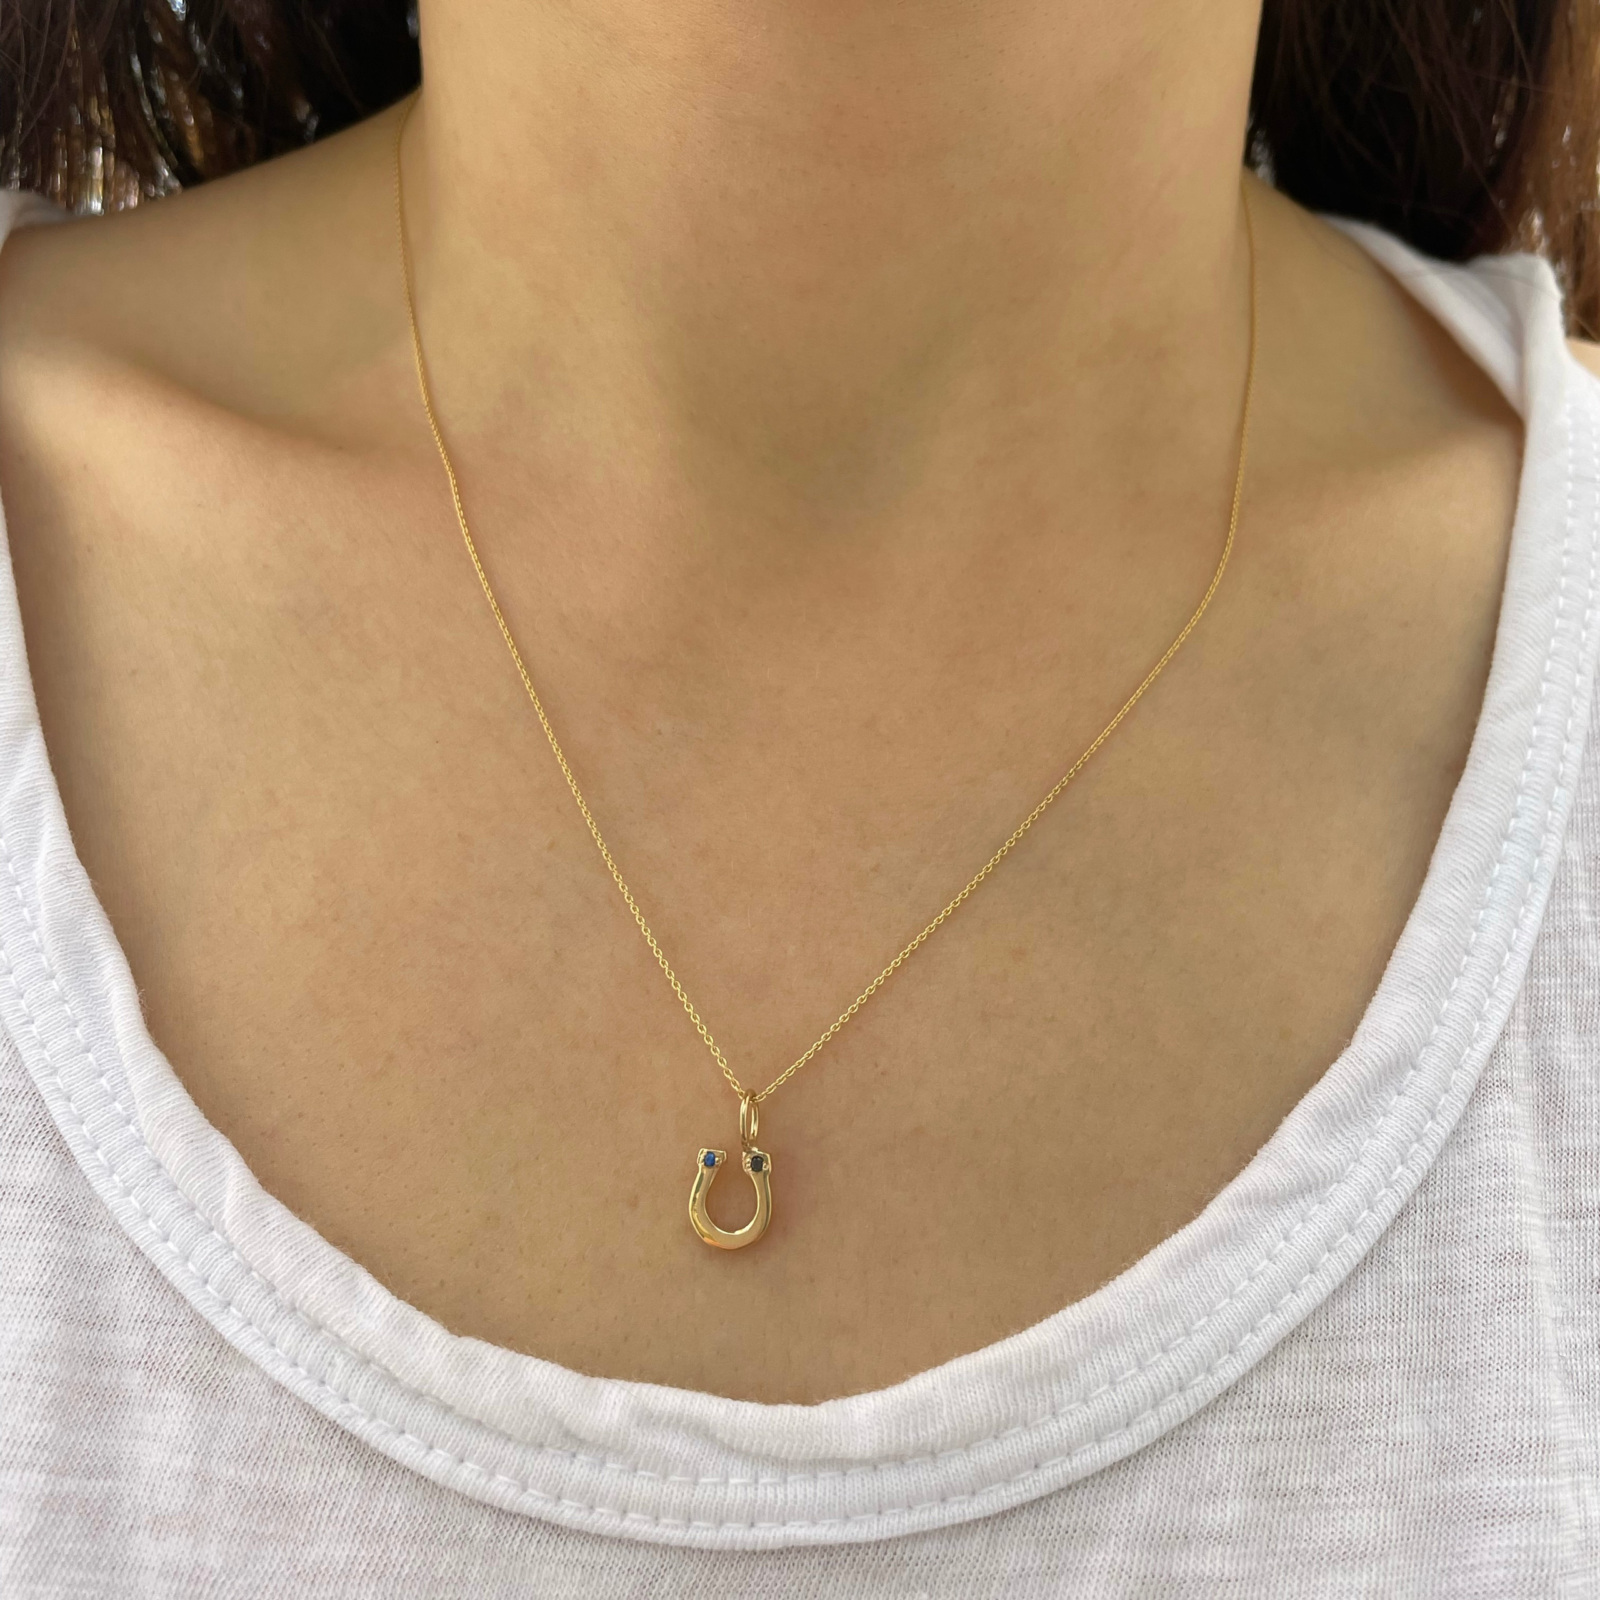 personalized-horseshoe-charm-necklaces